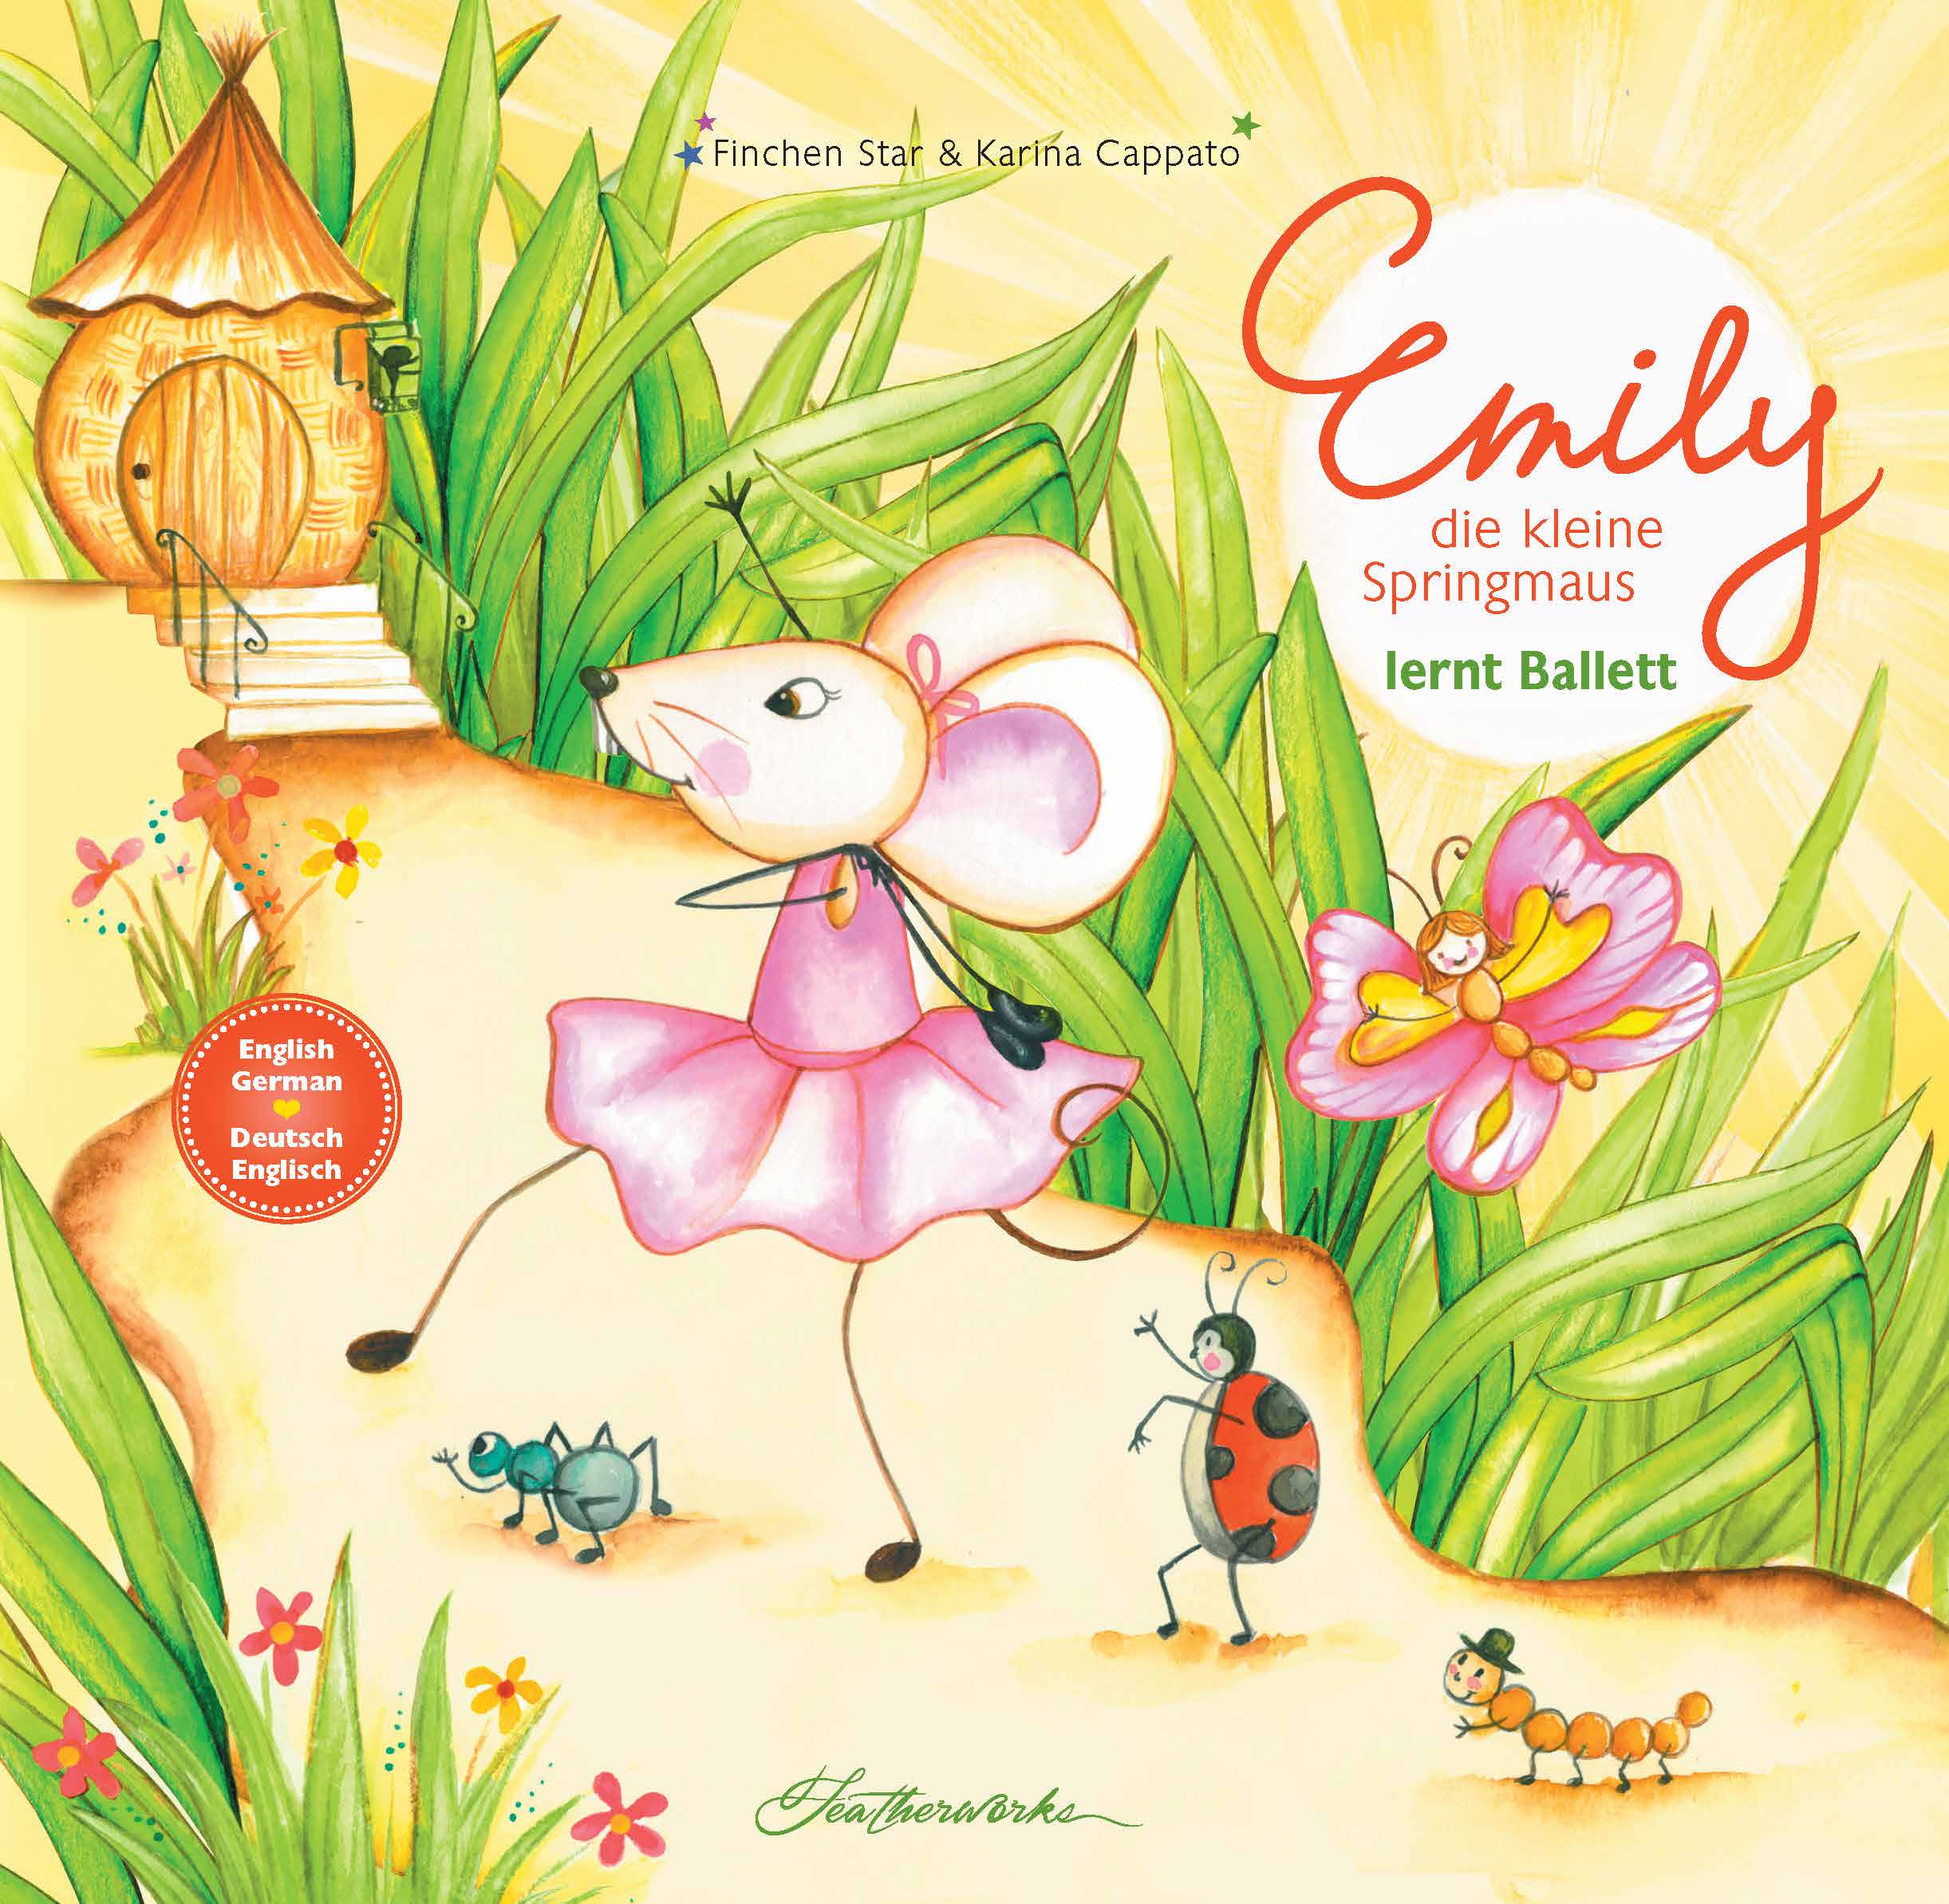 Emily lernt Ballet - online Buch kaufen bei Autorenhilfe e.U.